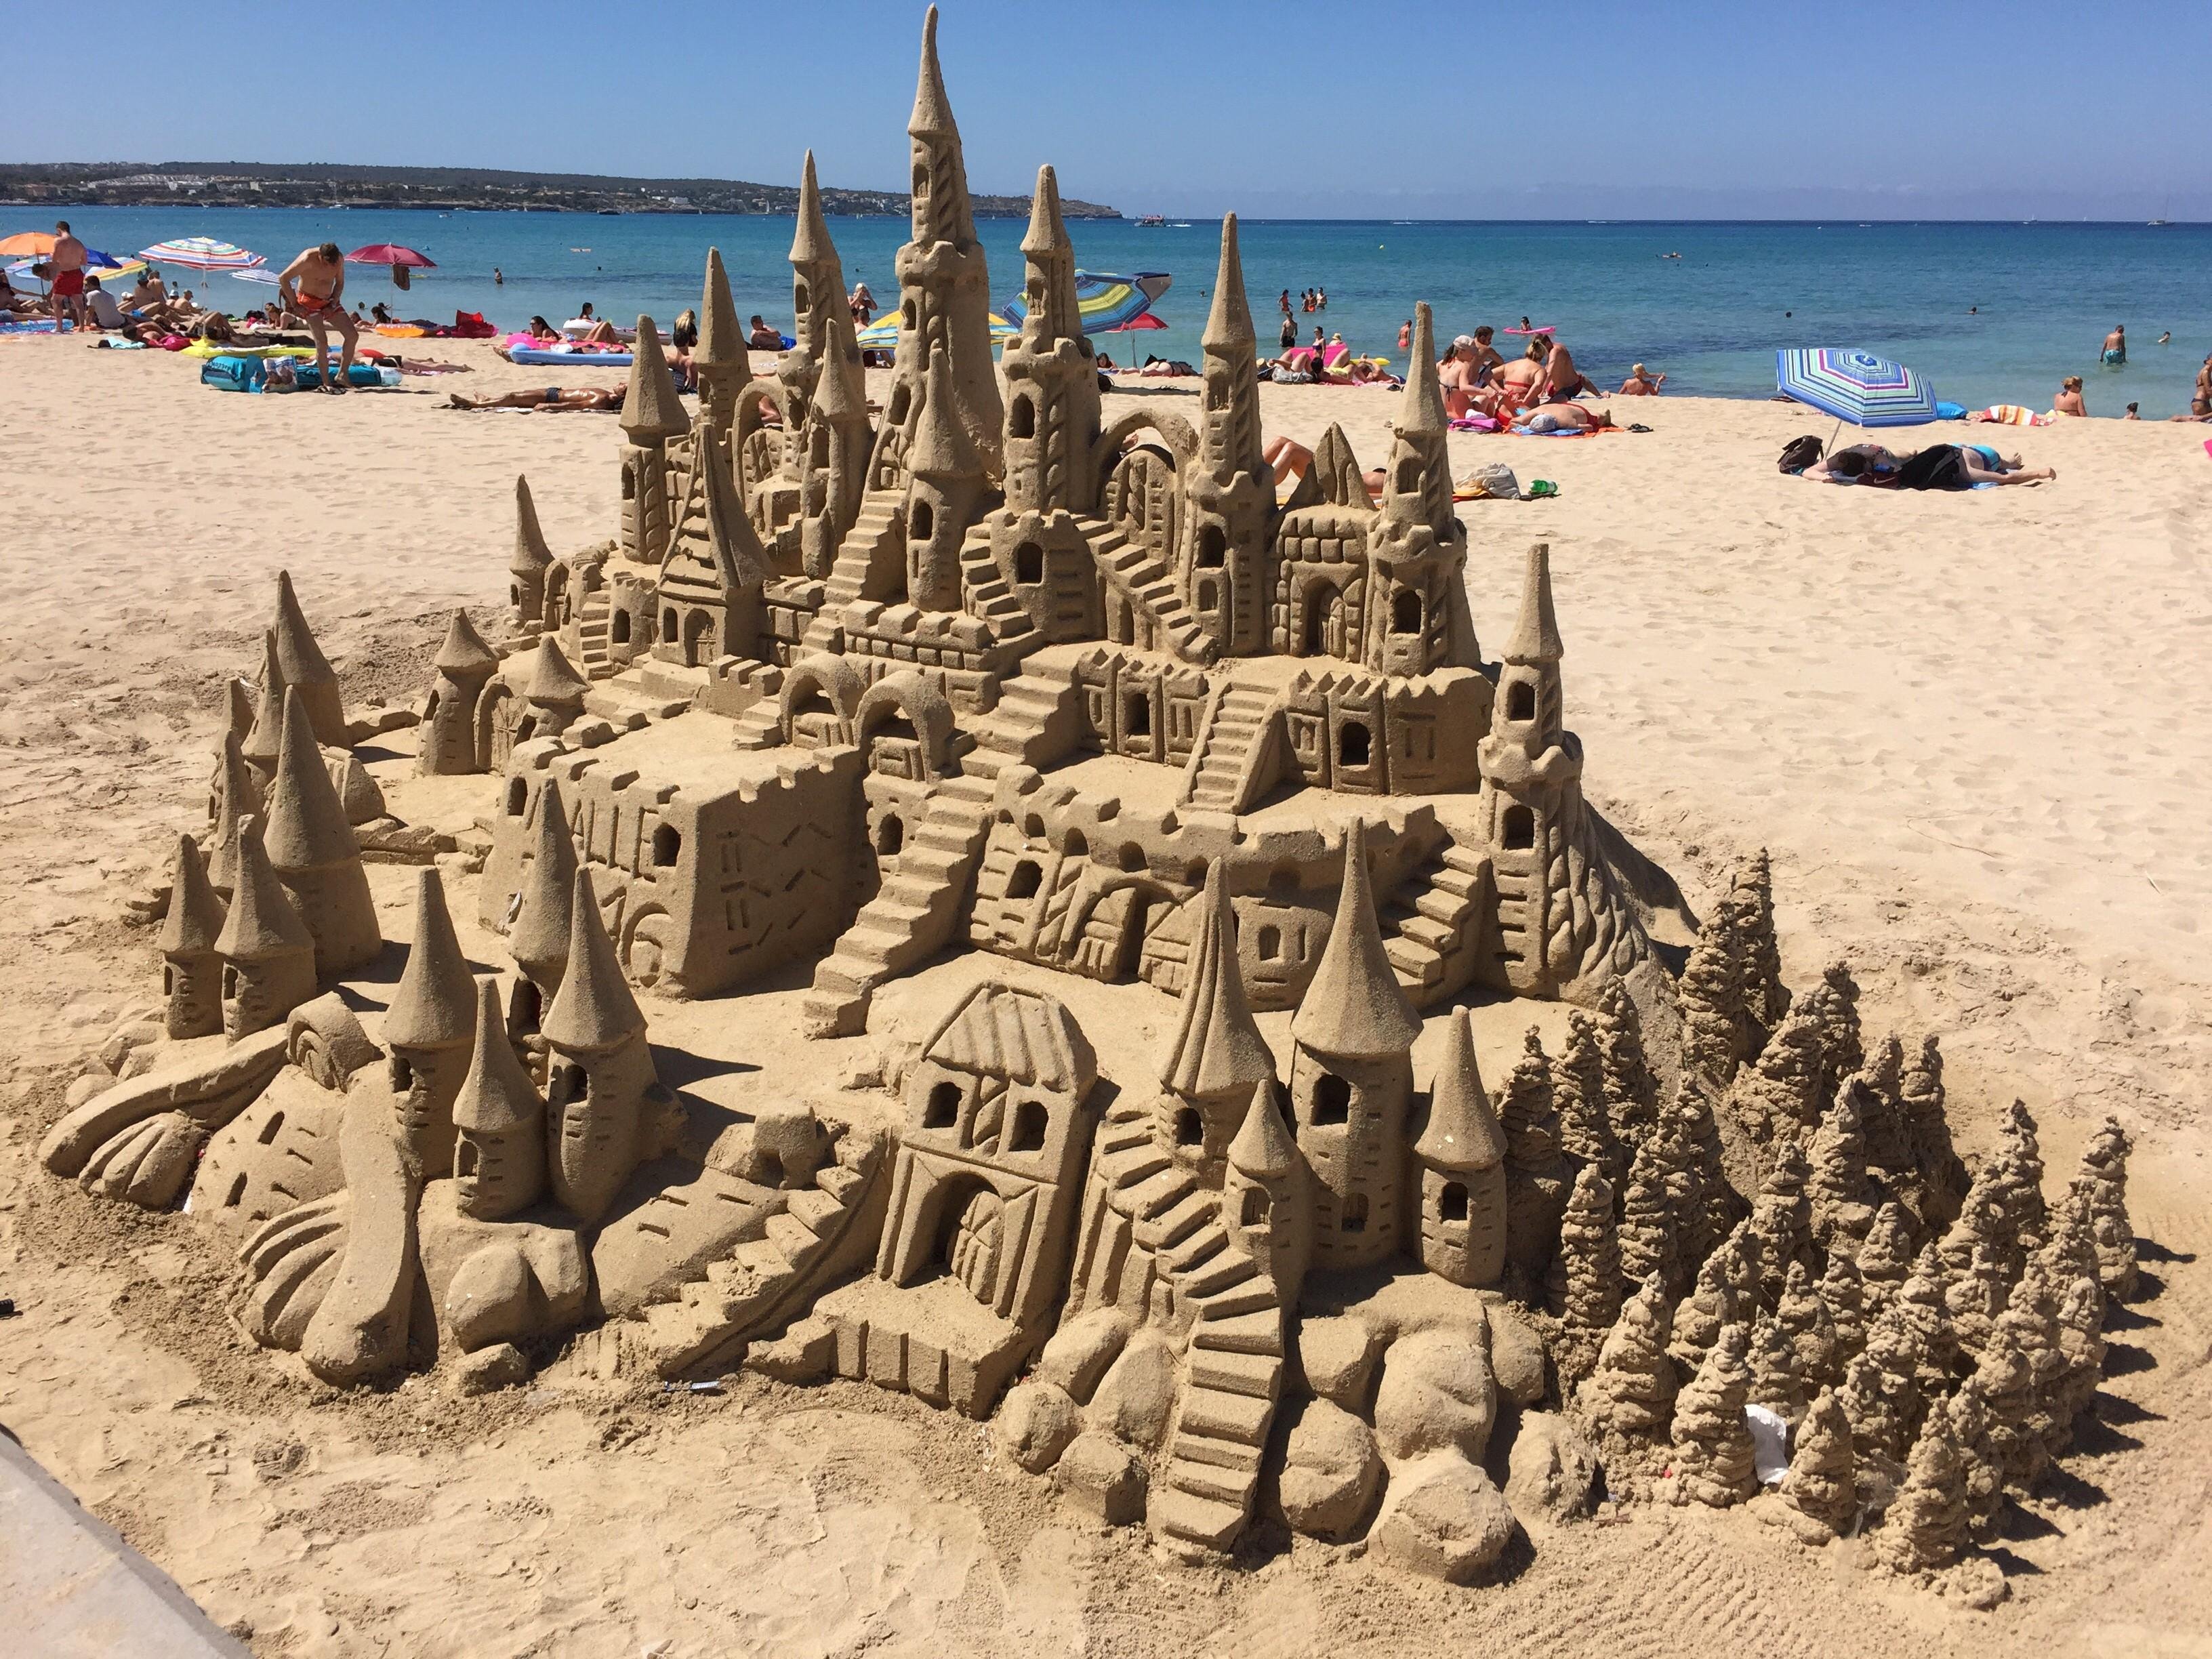 Sandcastle picture. День замка из песка (Sandcastle Day). Песчаные скульптуры. Песочные скульптуры. Песчаный замок.